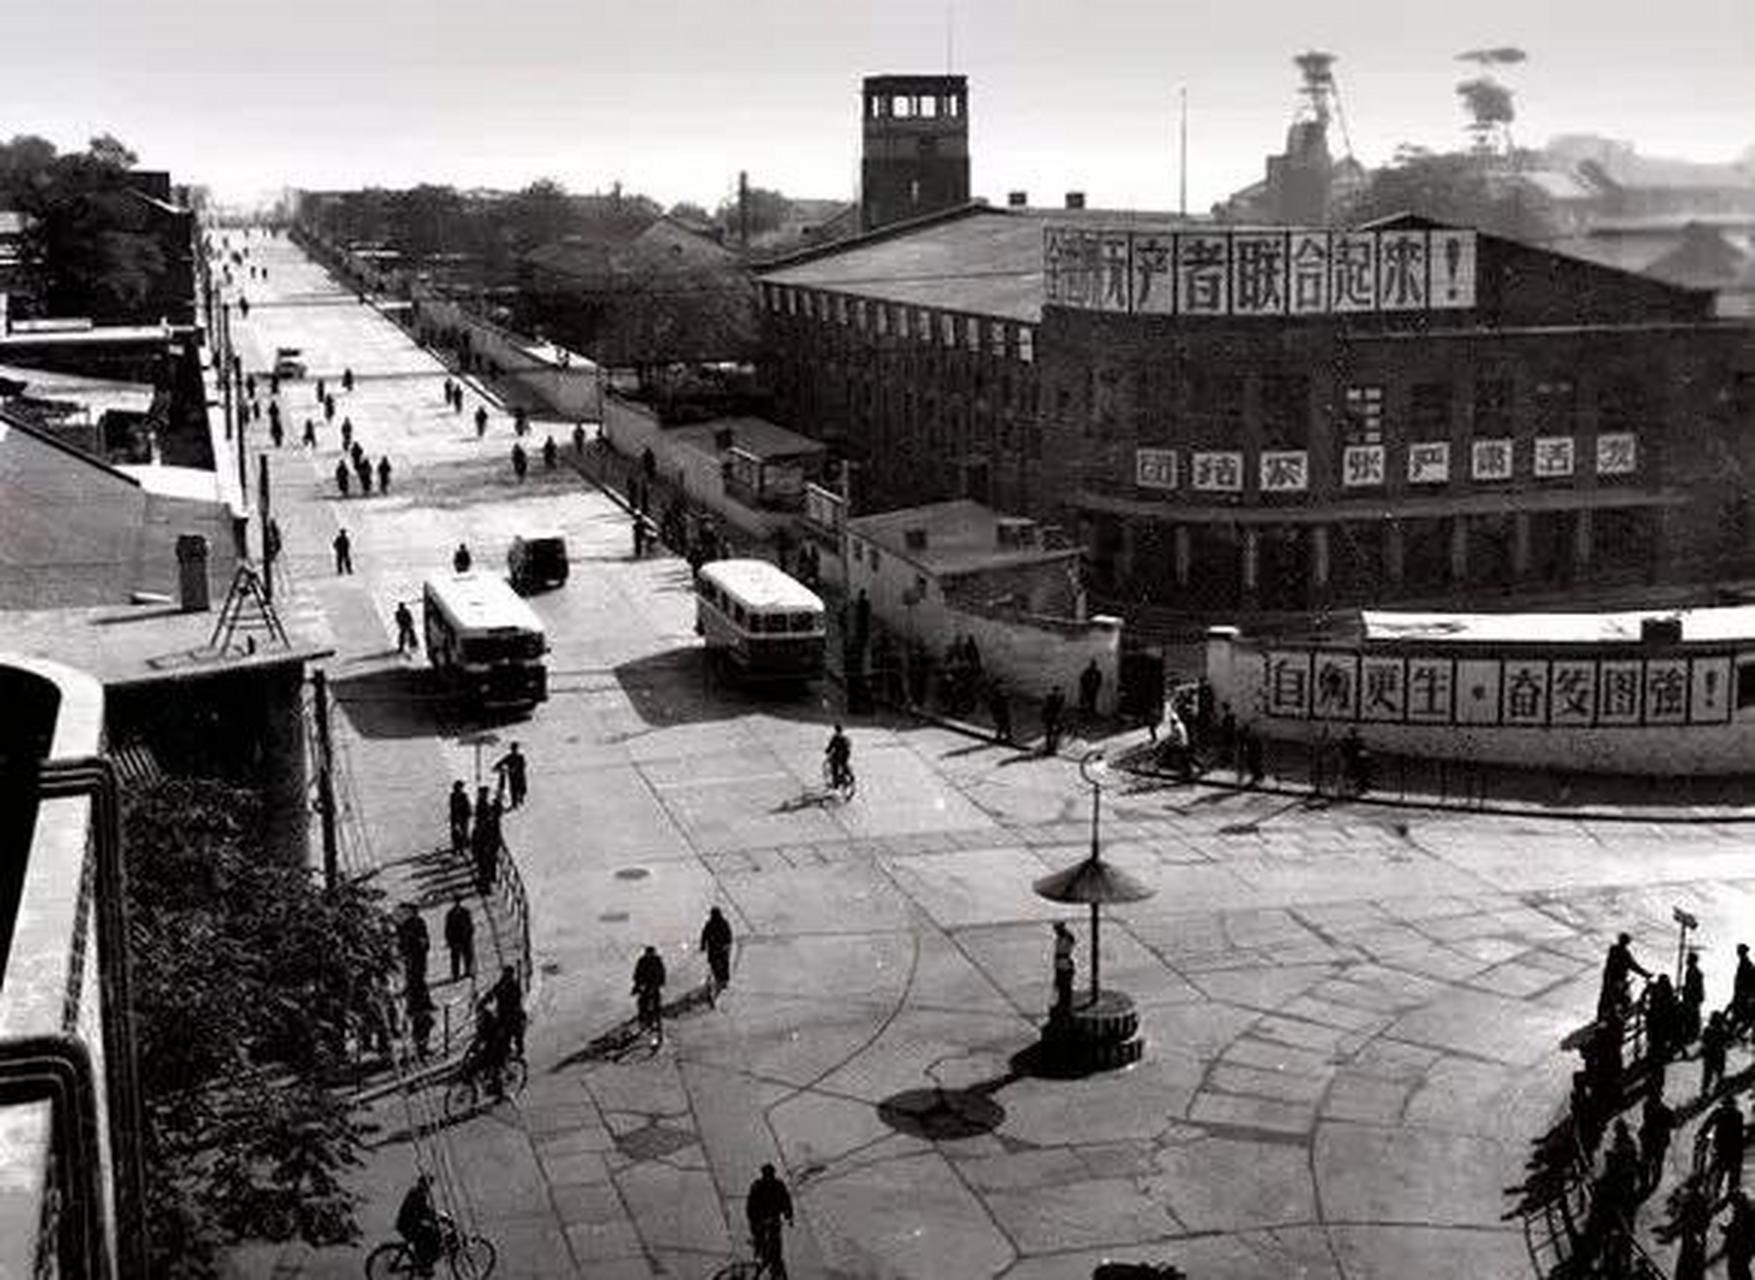 领动计划 河北唐山老照片:这张照片拍摄于唐山大地震前,七十年代